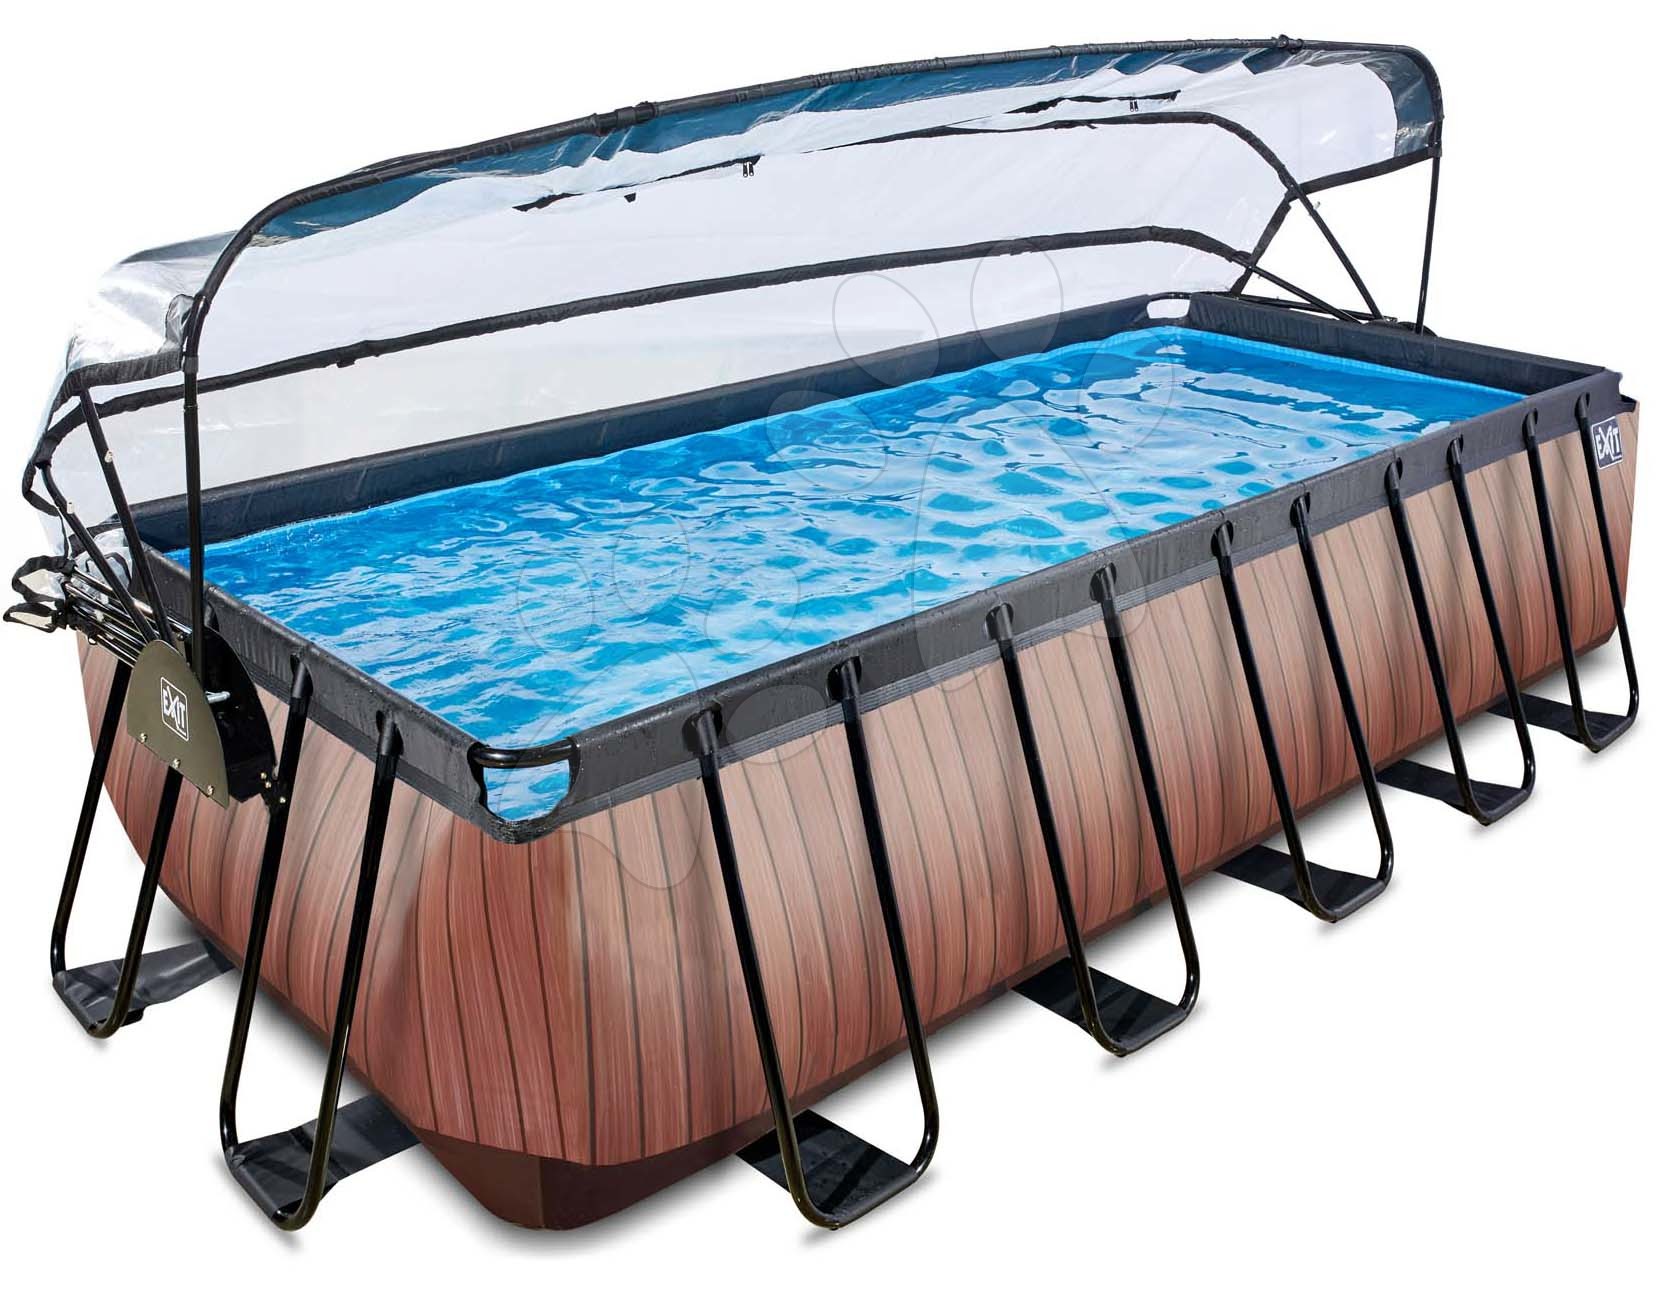 Obdélníkové bazény  - Bazén s krytem pískovou filtrací a tepelným čerpadlem Wood pool Exit Toys ocelová konstrukce 540*250*122 cm hnědý od 6 let